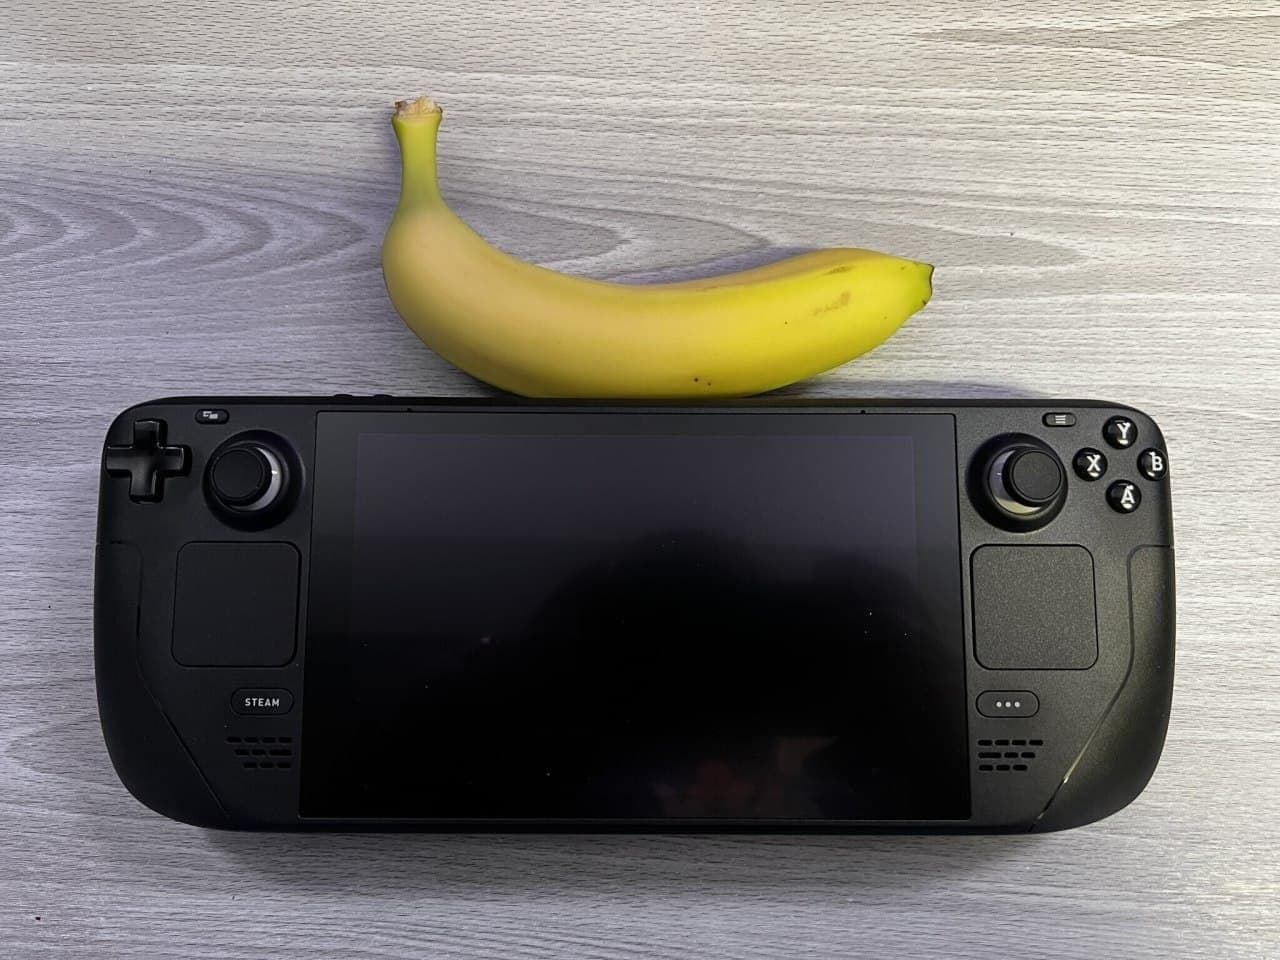 Comparación visual de Steam Deck con otras consolas portátiles y una banana-2